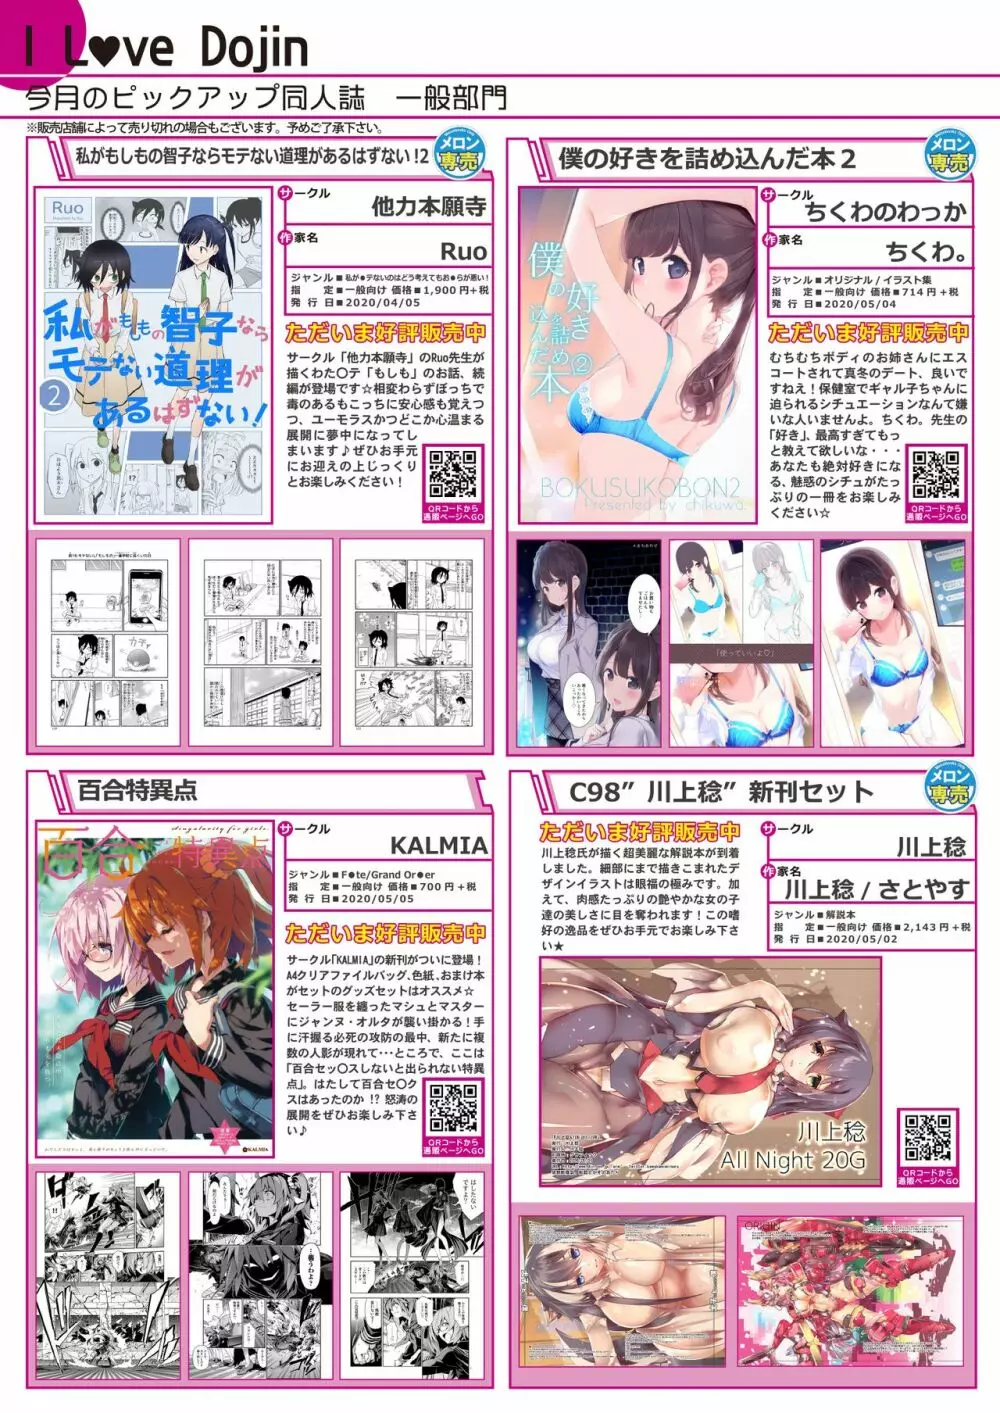 月刊うりぼうざっか店 2020年5月29日発行号 6ページ